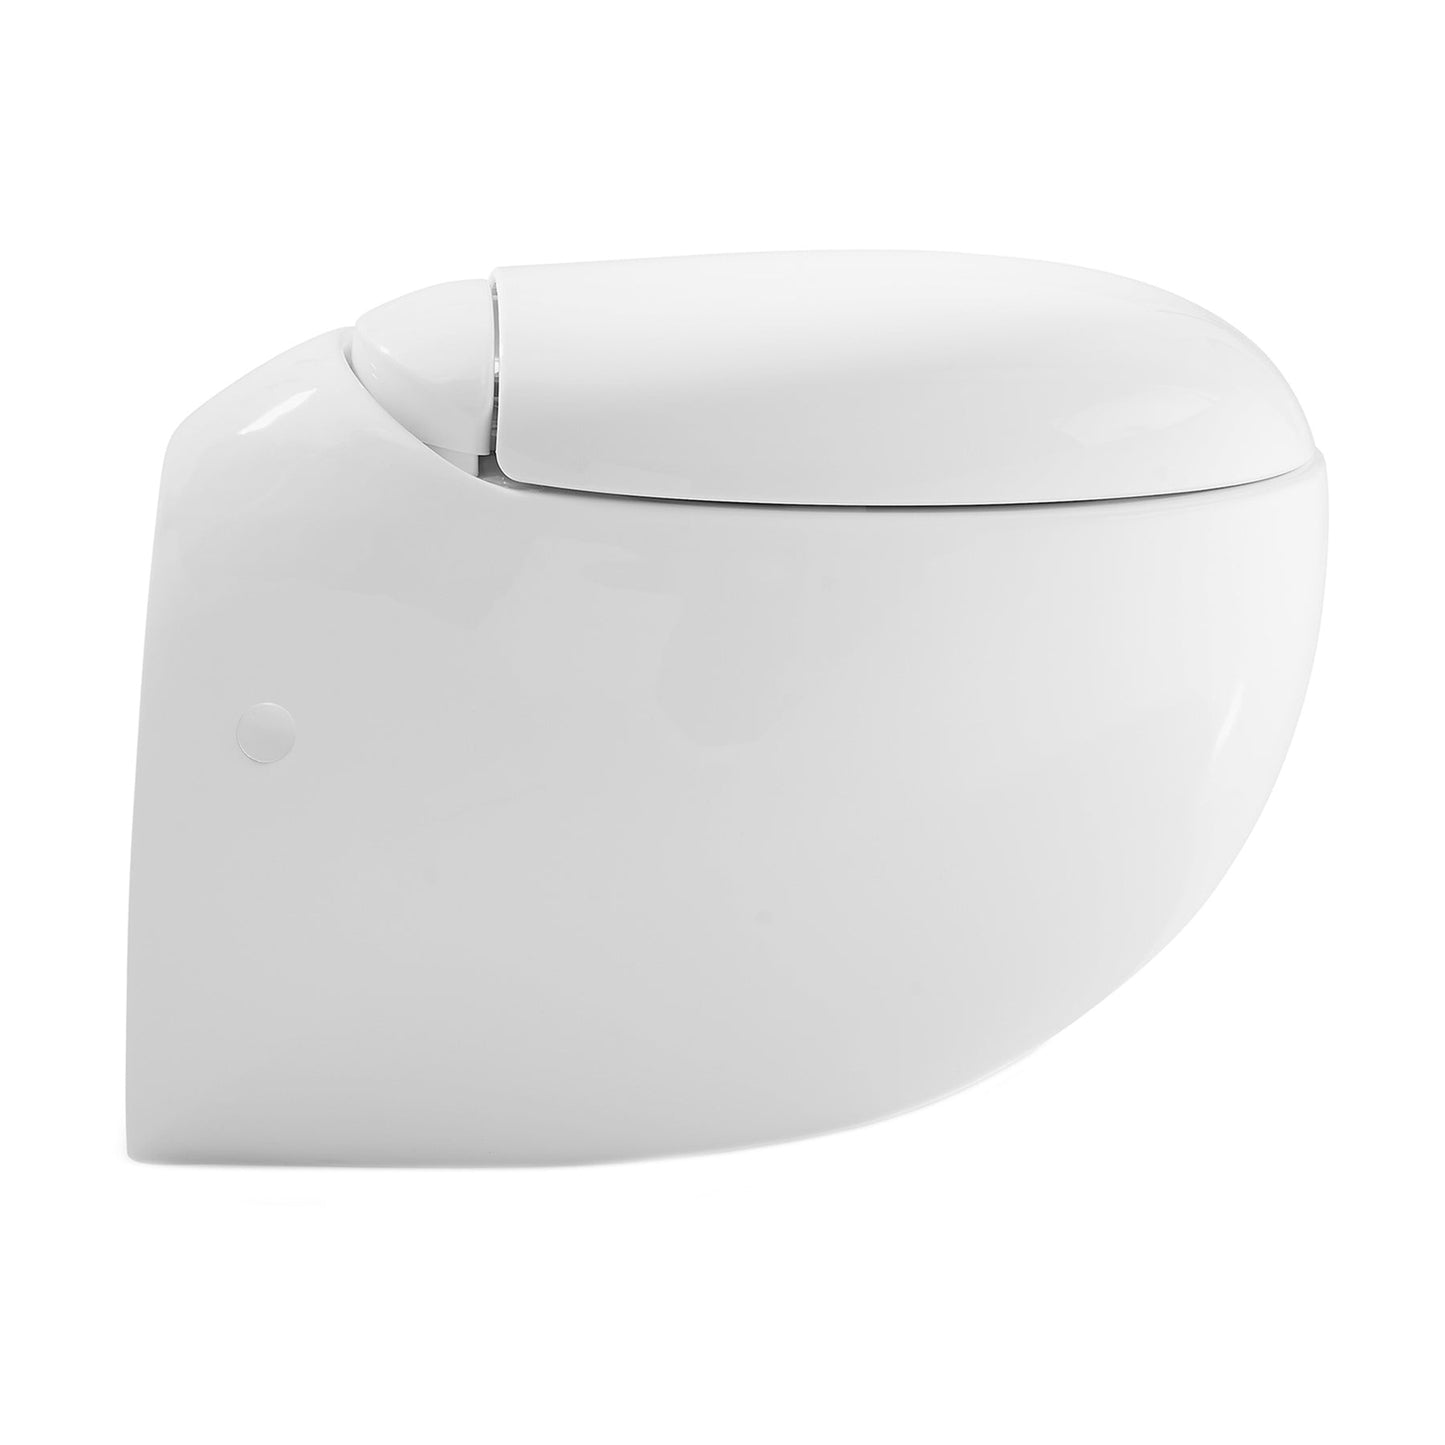 Swiss Madison Plaisir 16" x 15" White Elongated Wall-Hung Toilet Bowl